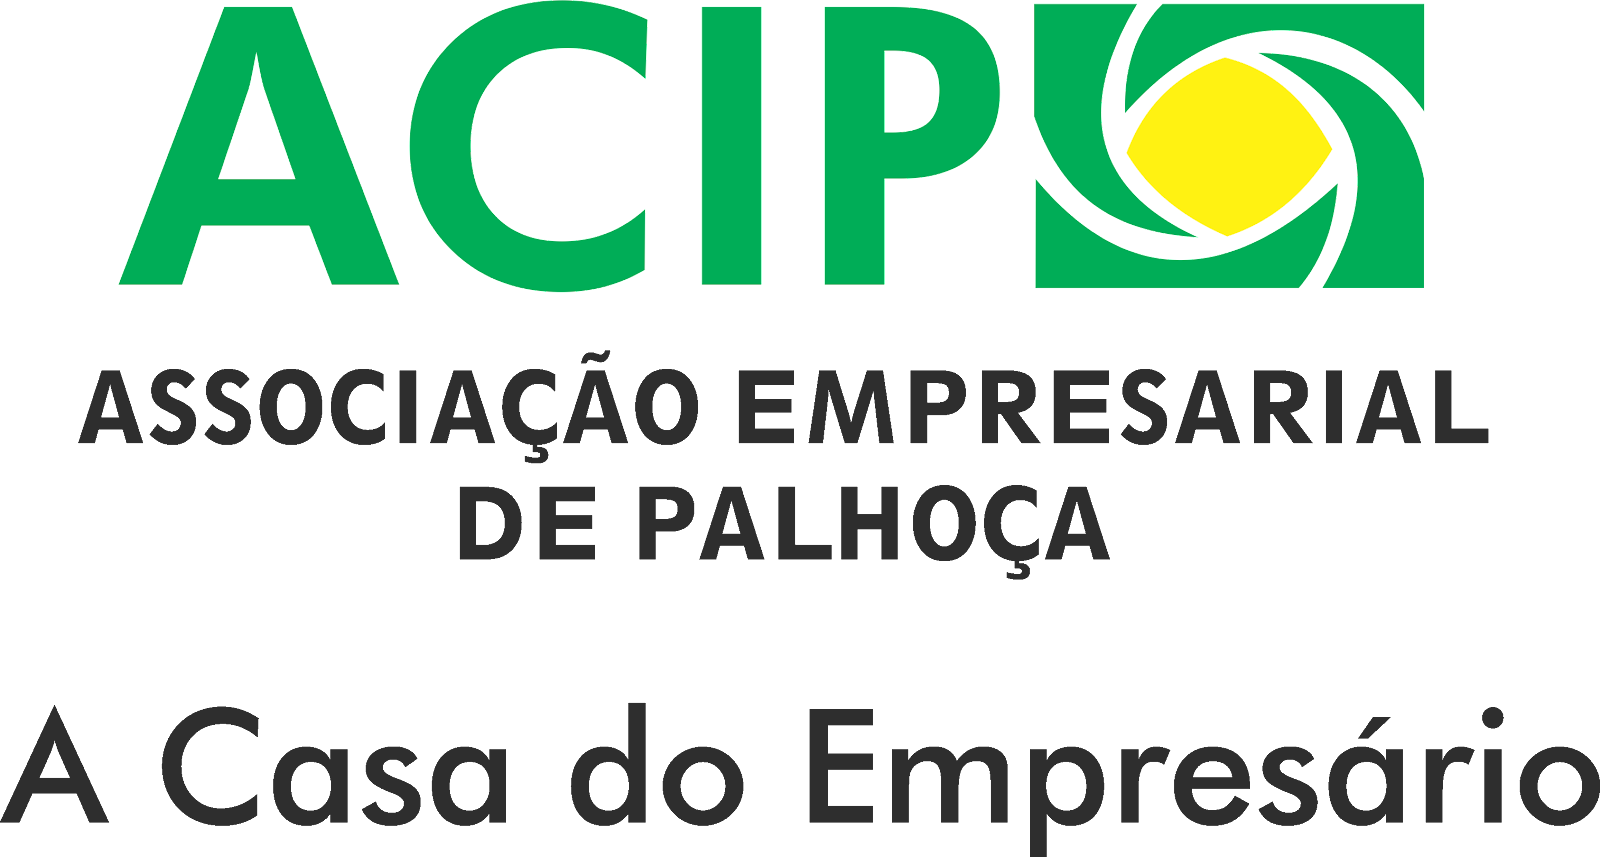 ACIP - Associação Empresarial de Palhoça